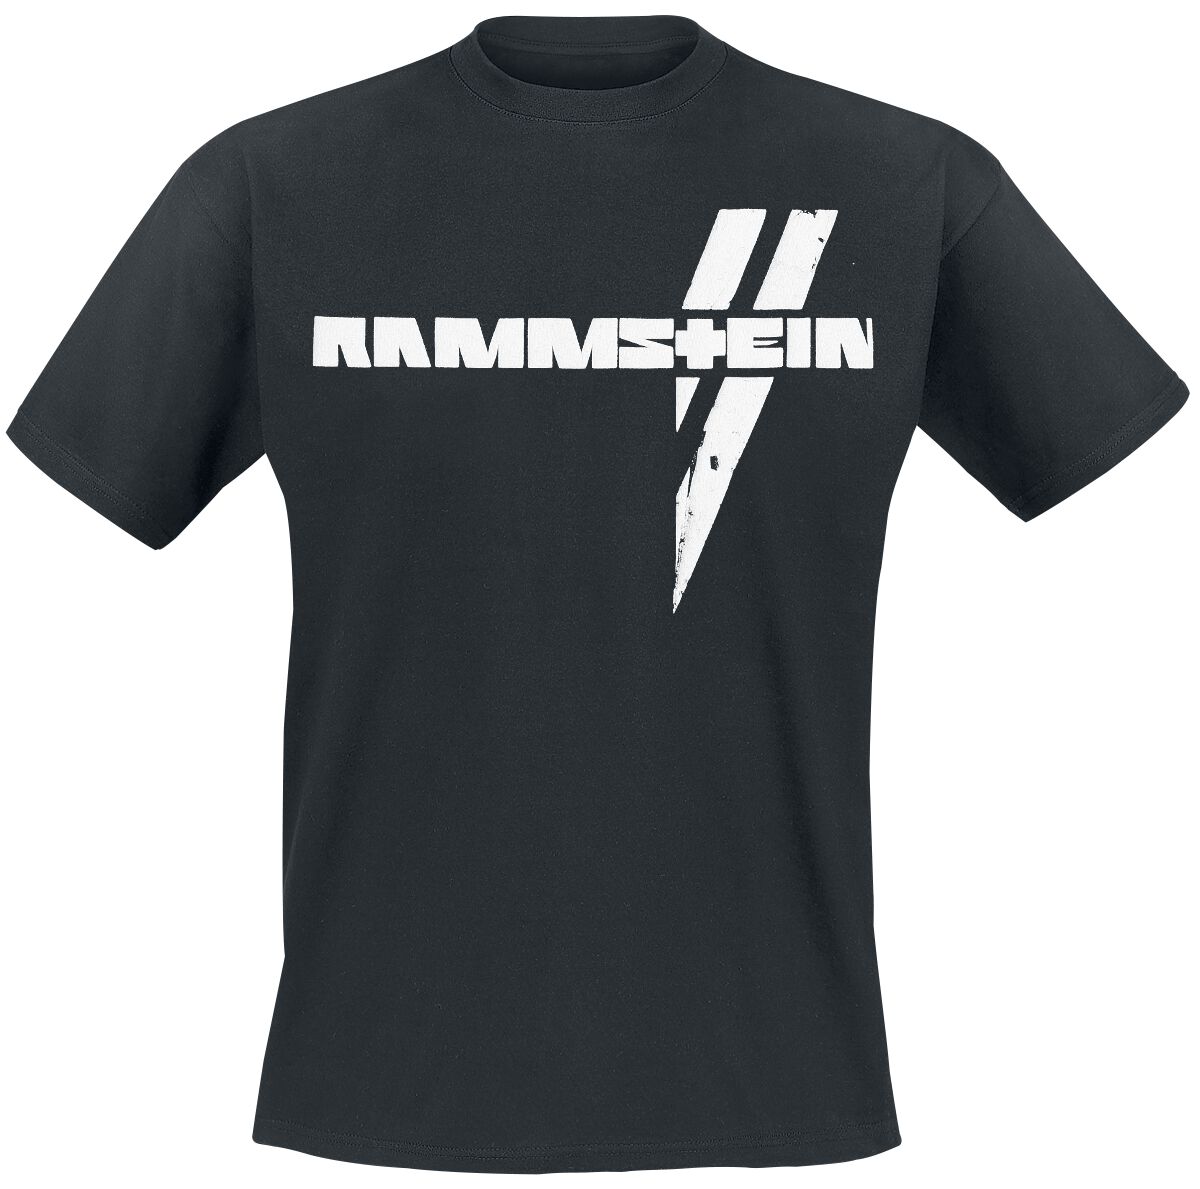 Rammstein T-Shirt - Weiße Balken - S bis 5XL - für Männer - Größe S - schwarz  - Lizenziertes Merchandise!